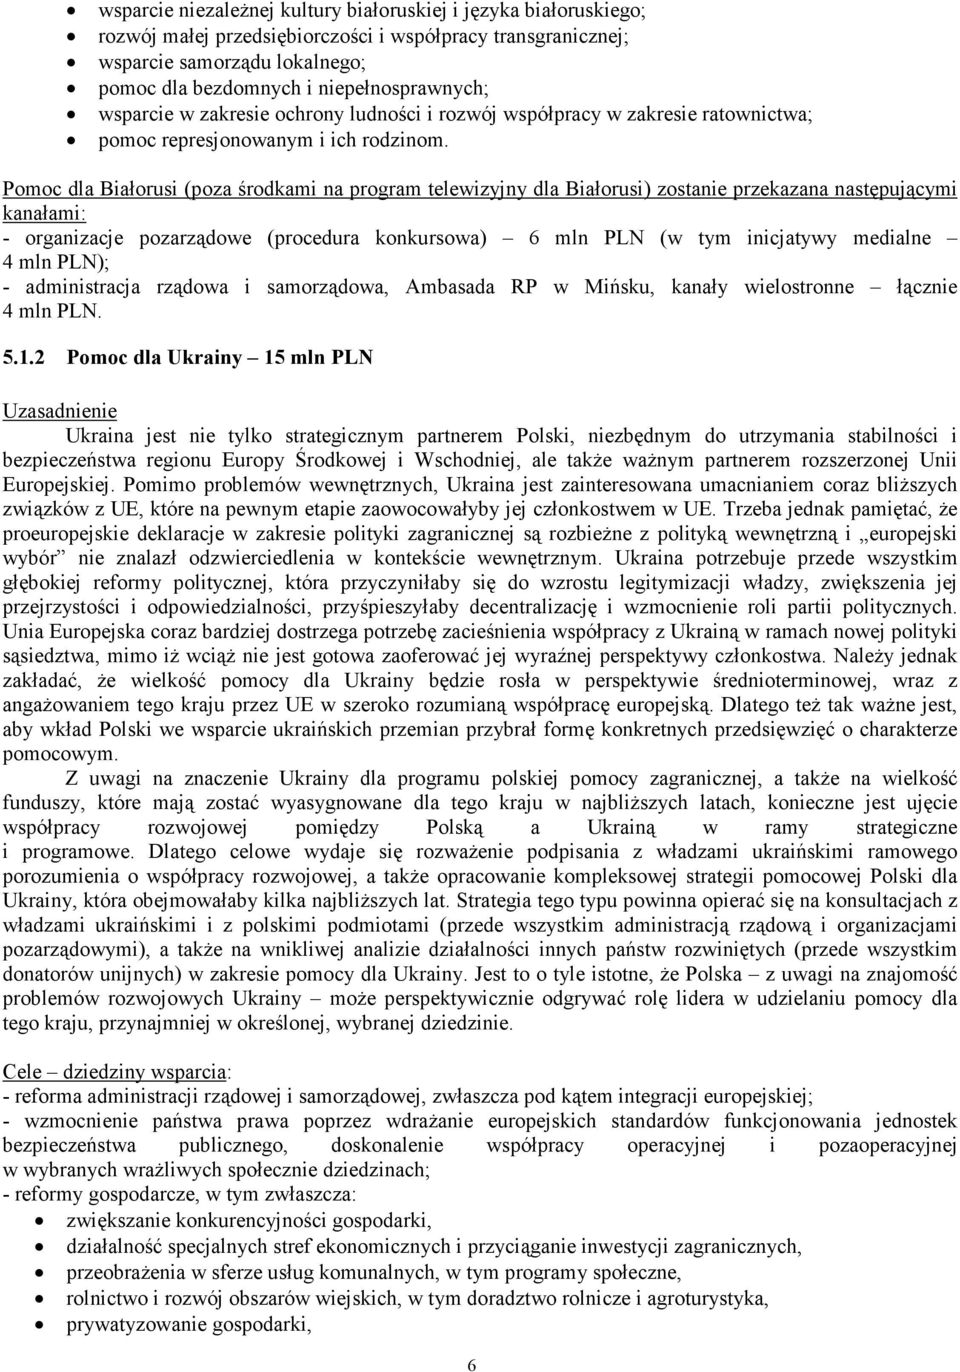 Pomoc dla Białorusi (poza środkami na program telewizyjny dla Białorusi) zostanie przekazana następującymi kanałami: - organizacje pozarządowe (procedura konkursowa) 6 mln PLN (w tym inicjatywy